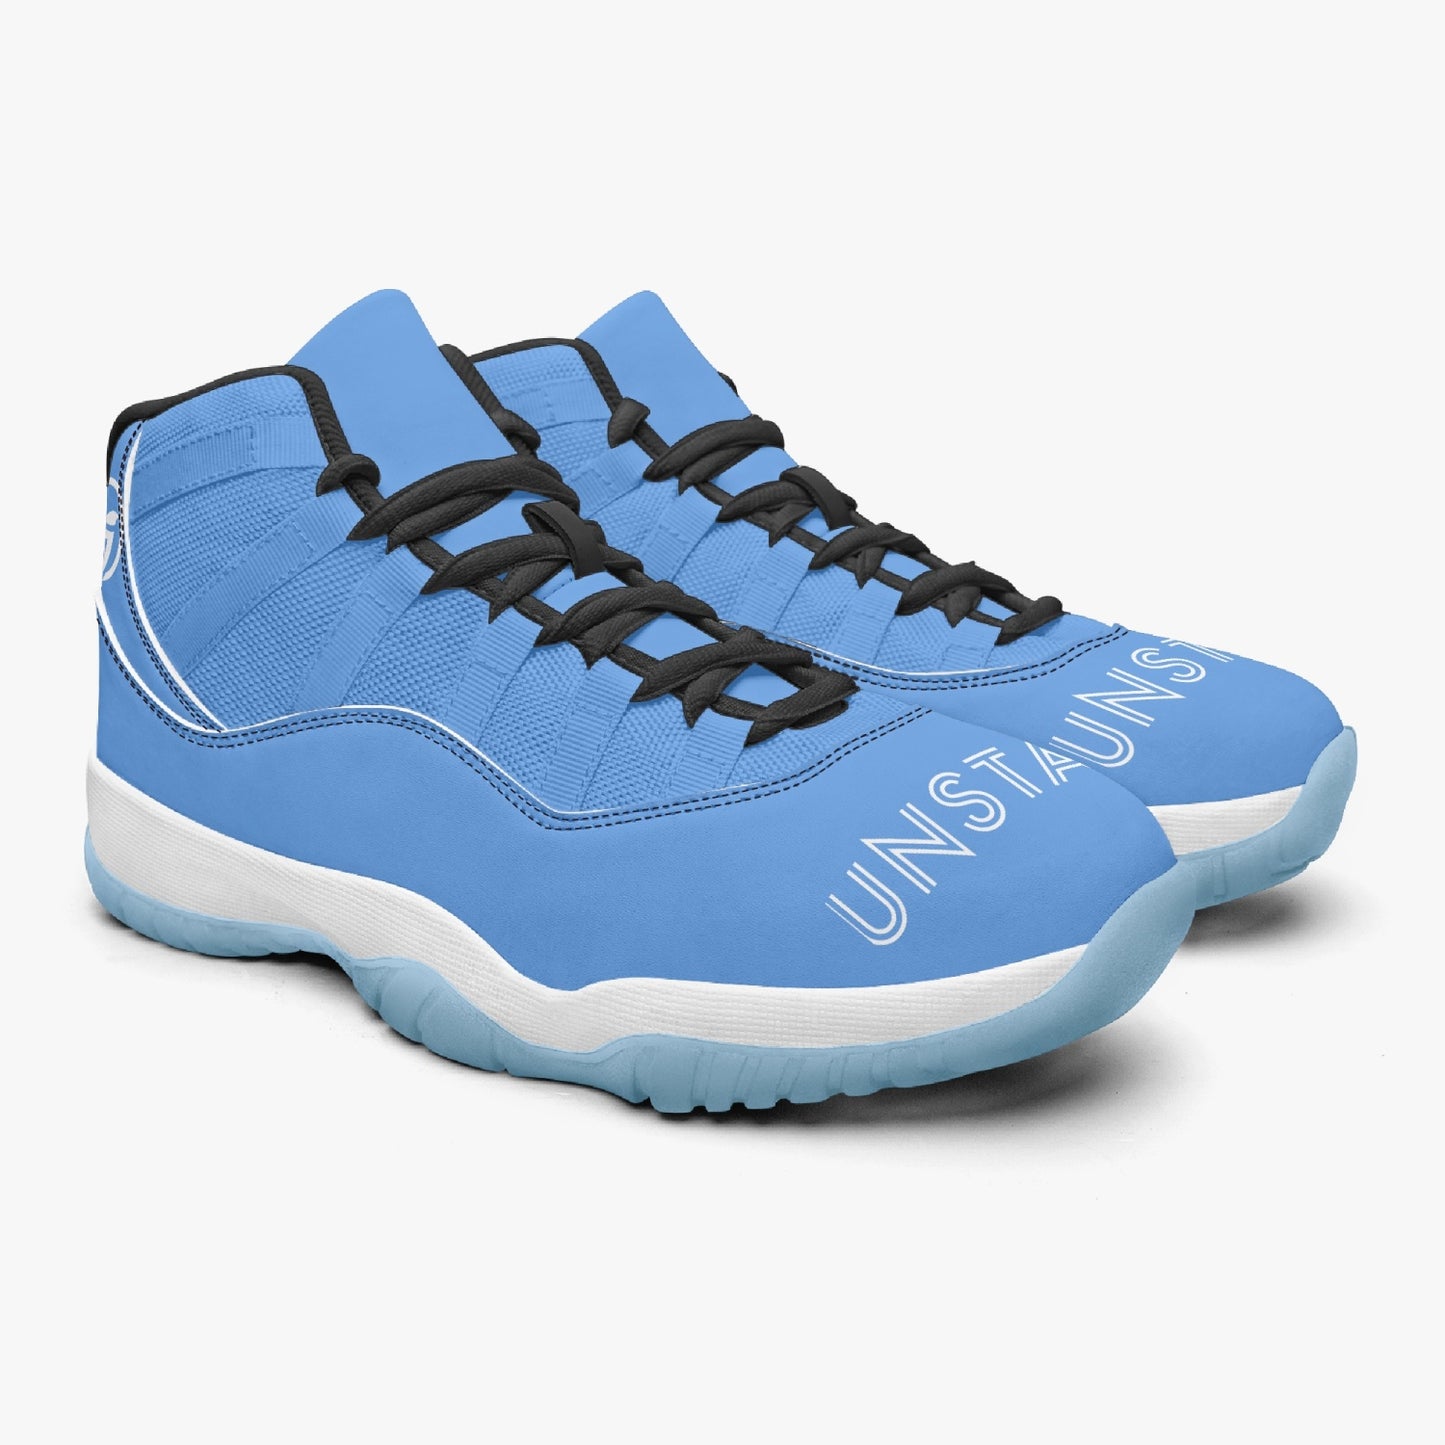 Unstax Bluks Basketball Sneakers -Blue Sole